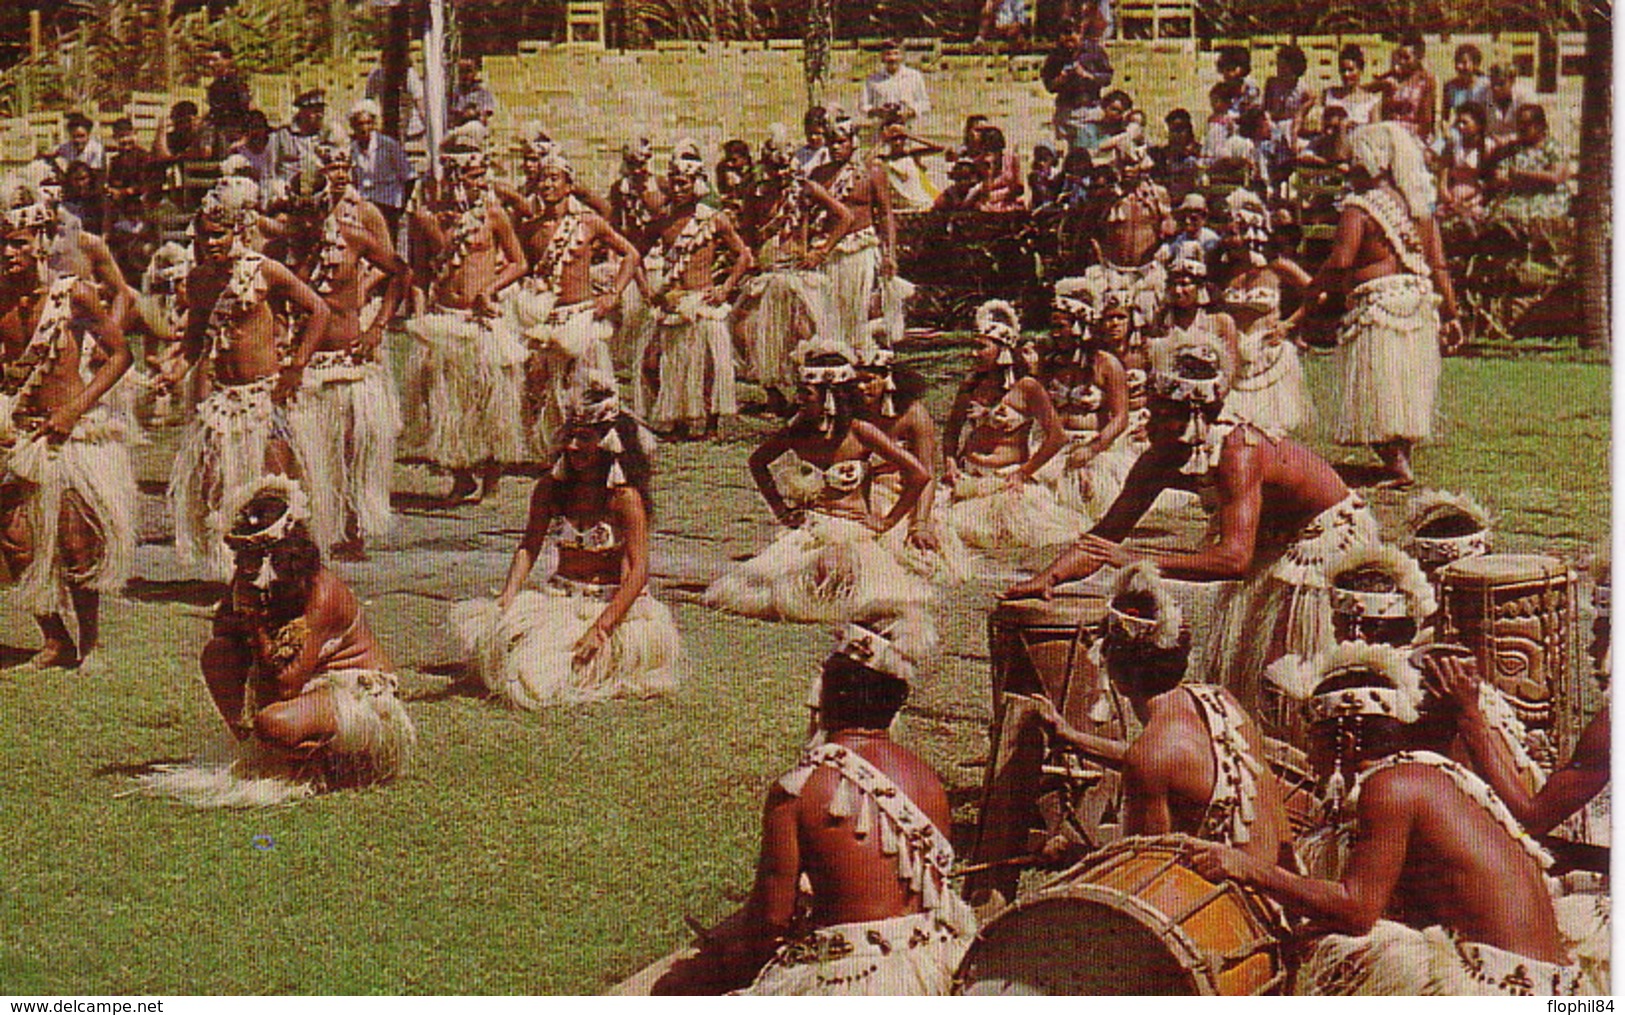 TAHITI - PAPEETE - LE 15-7-1970 - CARTE POSTALE DANSEURS POUR LA FRANCE - AFFRANCHISSEMENT A 15F. - Tahiti